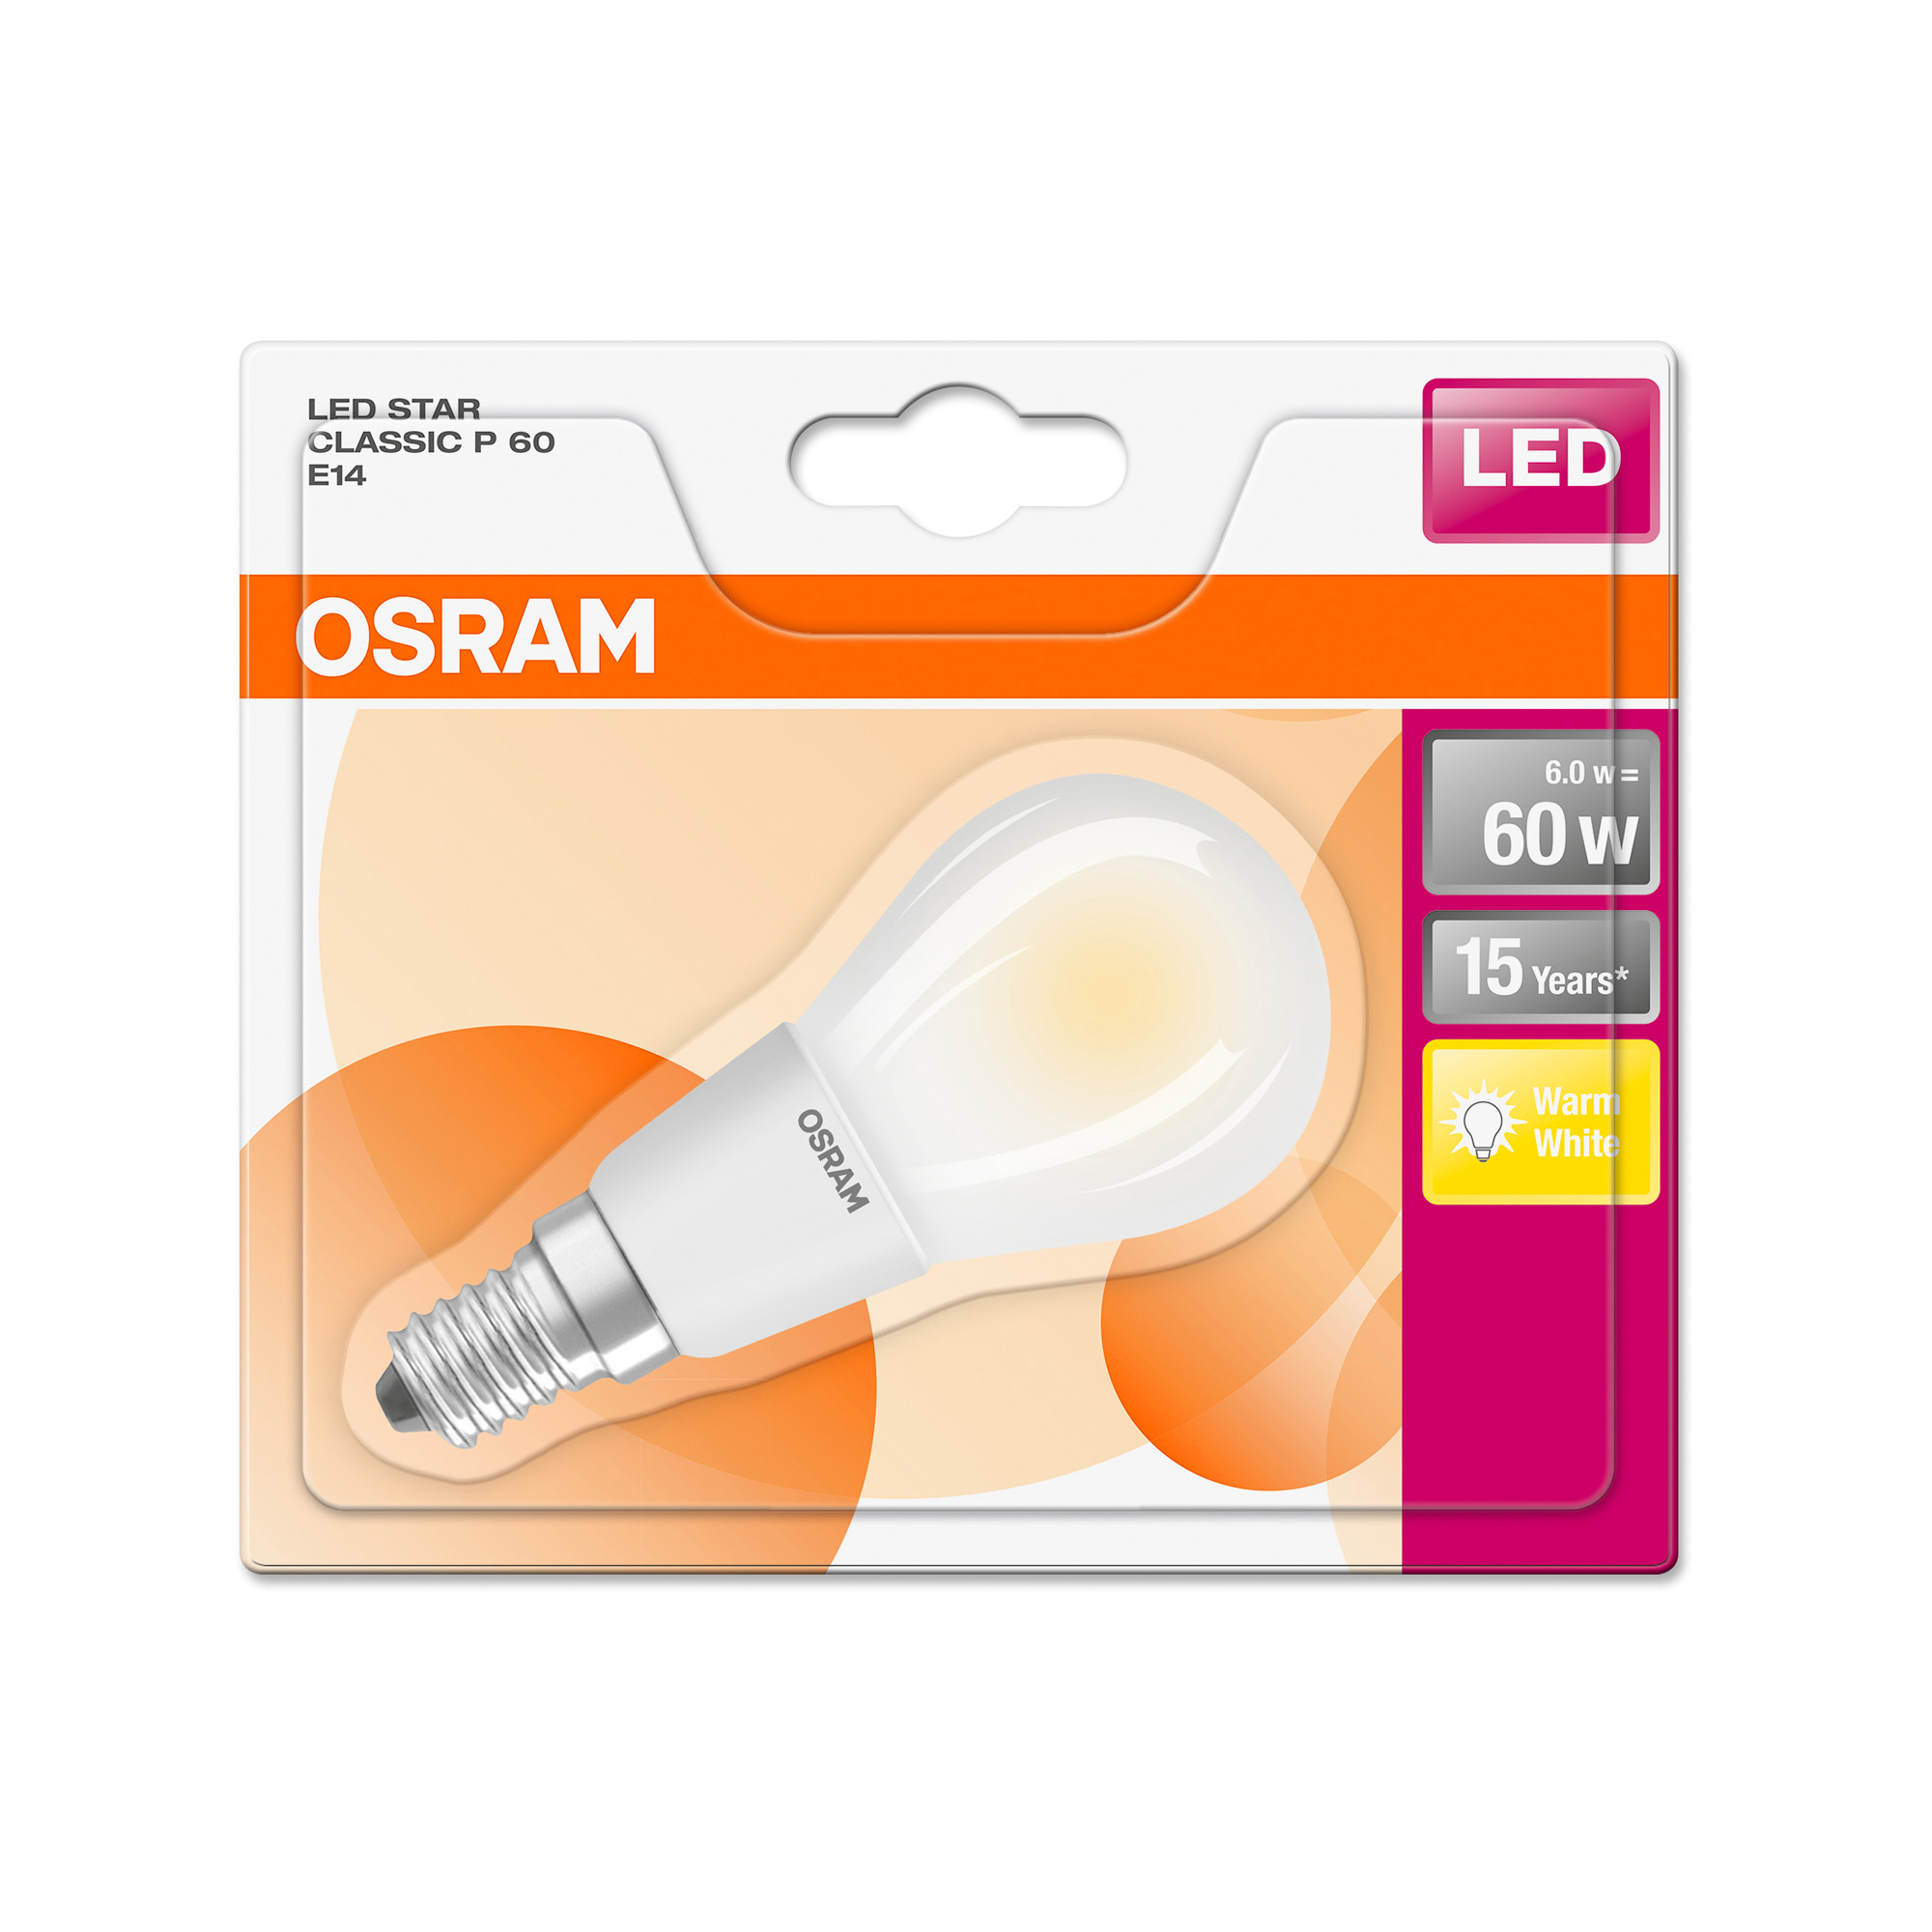 Osram LED STAR RETROFIT diffuse CLP 60 6W 827 E14 non-dim 2700K 806lm